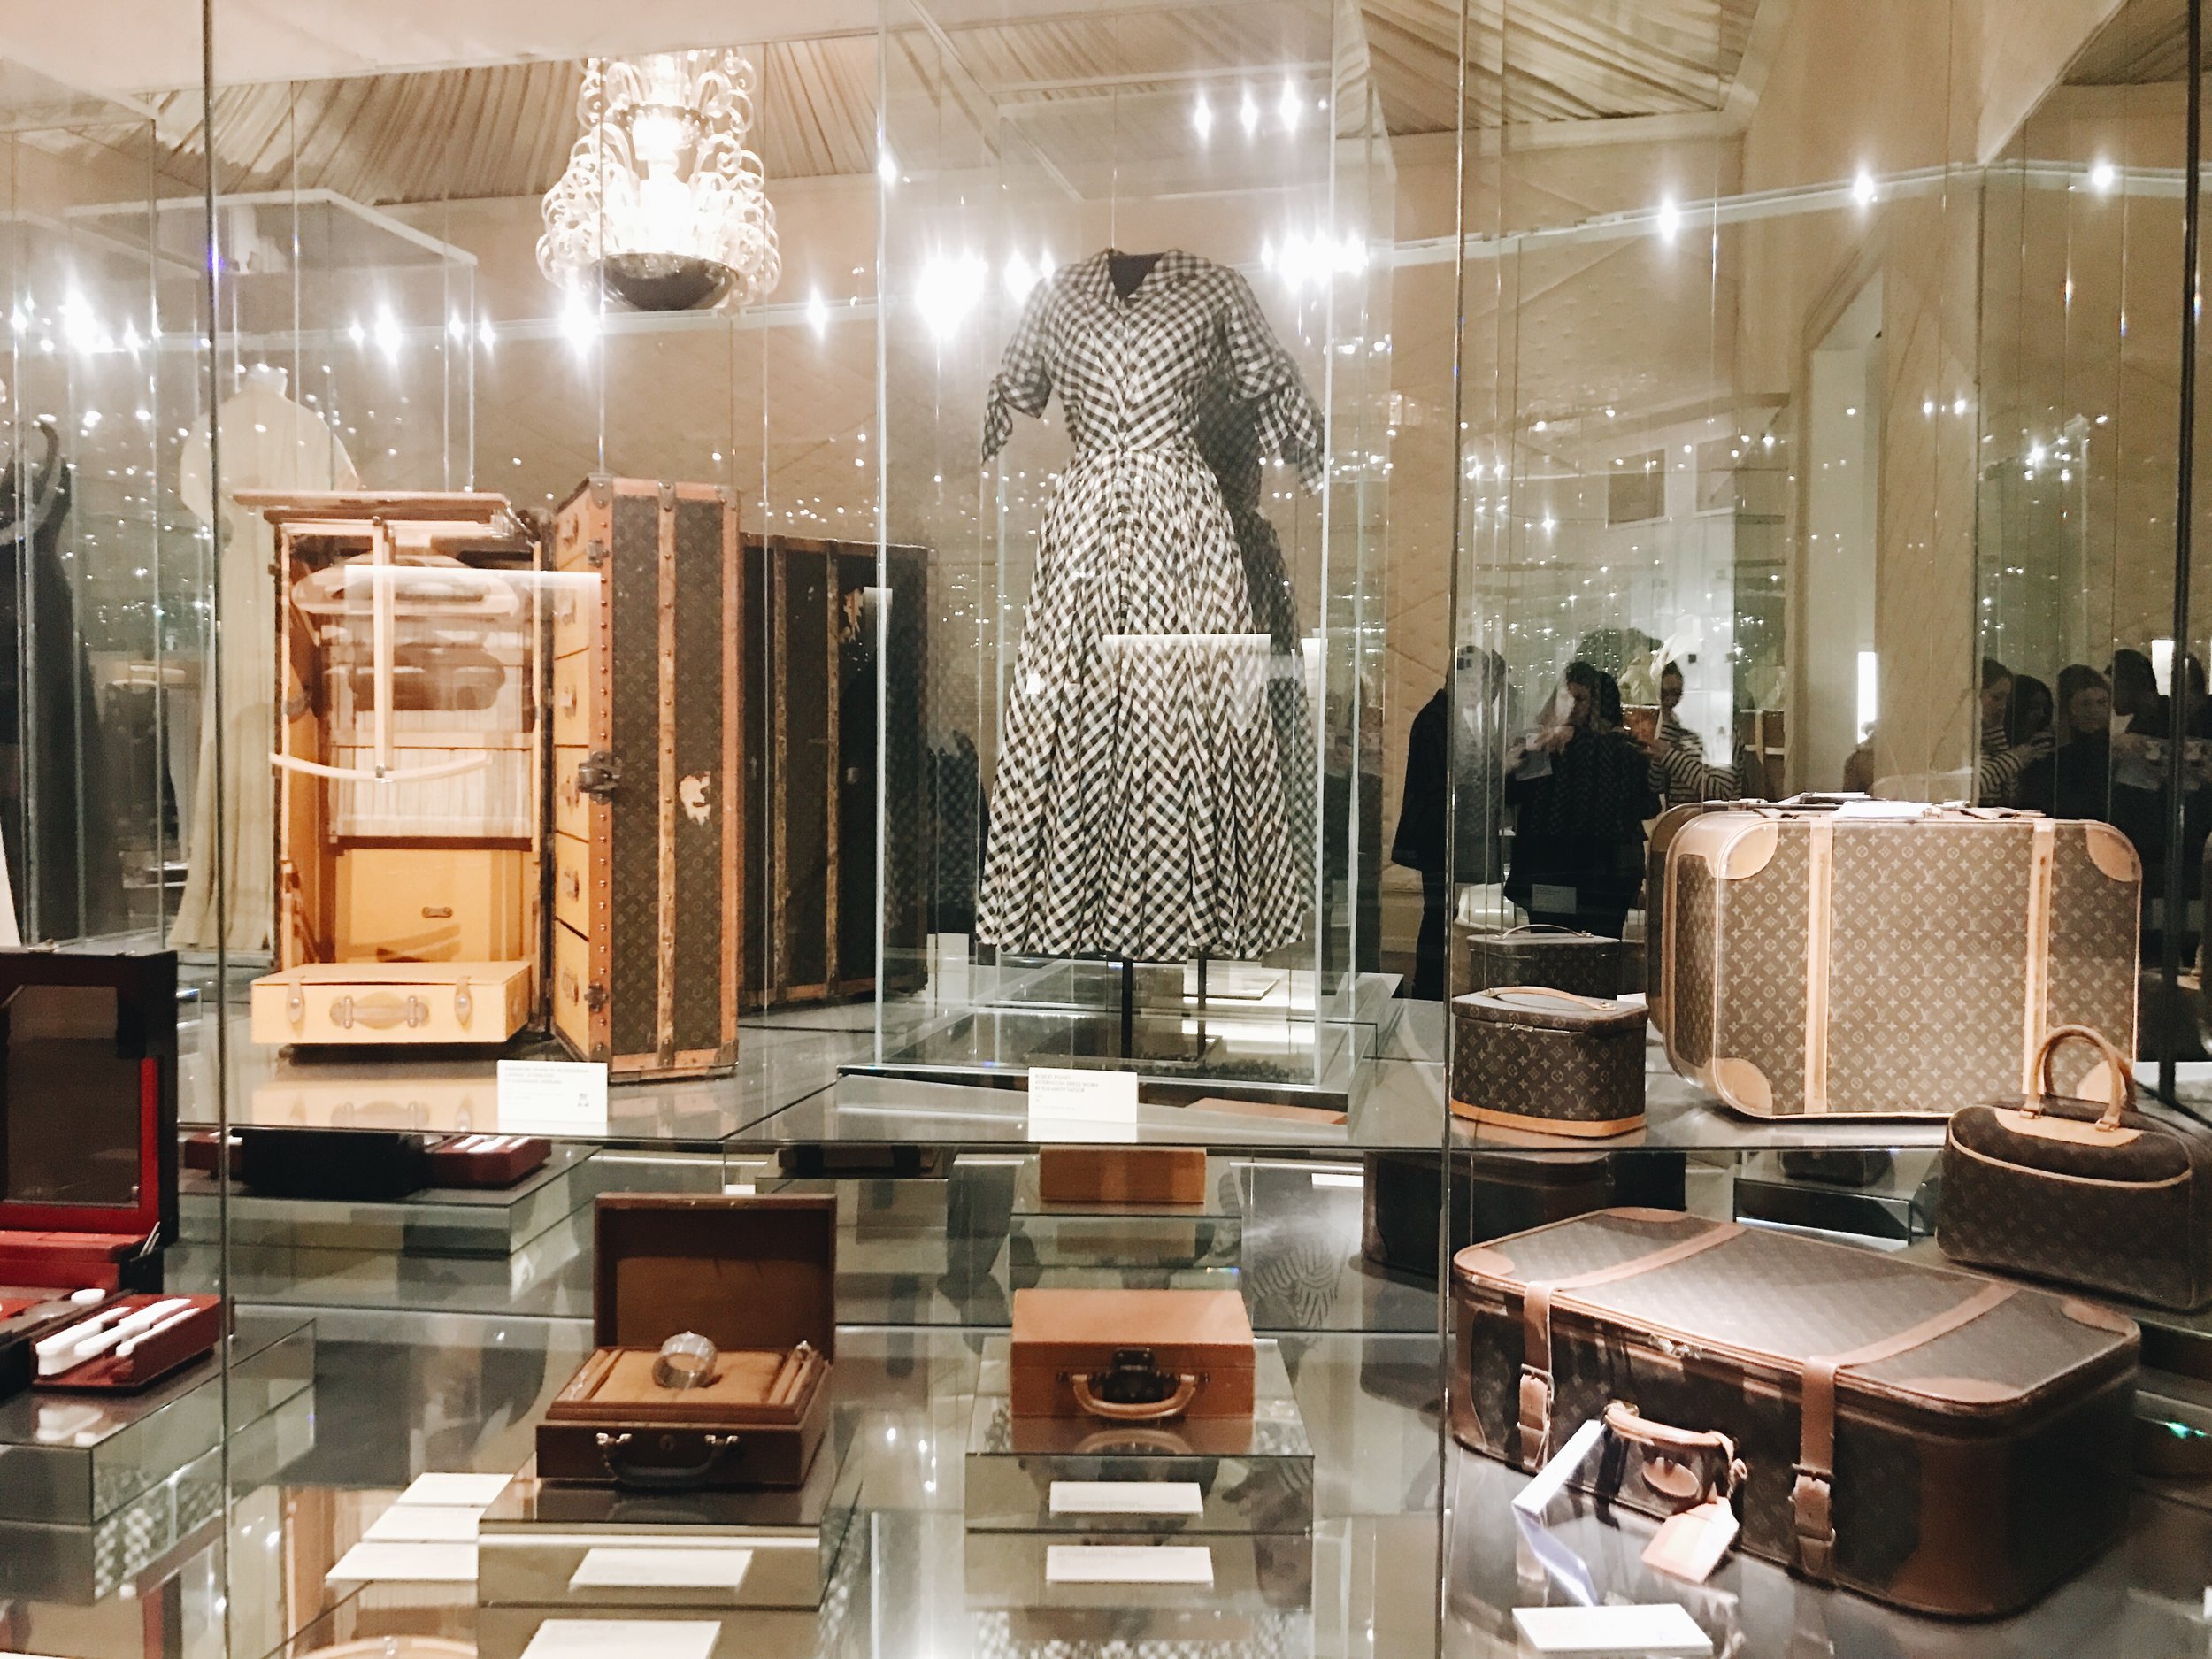 Volez, Voguez, Voyagez: The History of Louis Vuitton — // TOMFORDE //